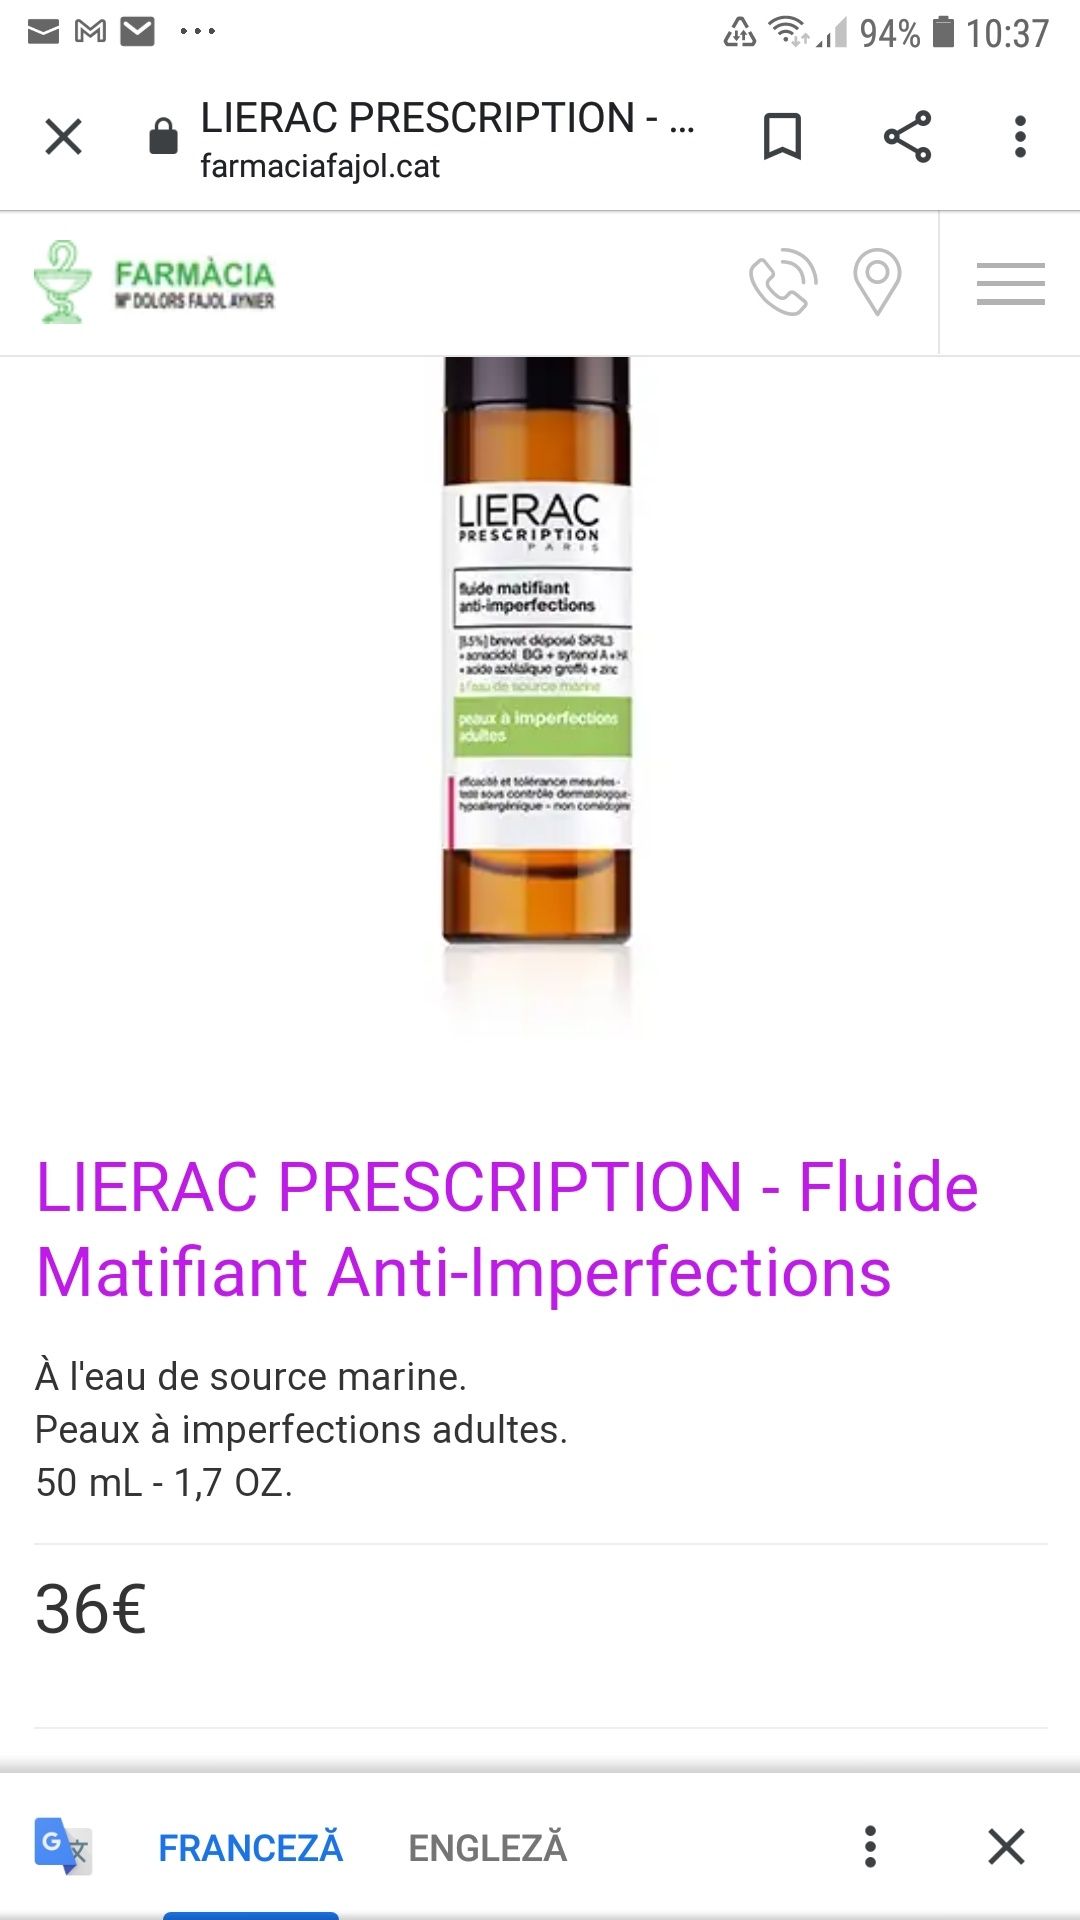 Fluide matifiant anti-imperfections Lierac Paris